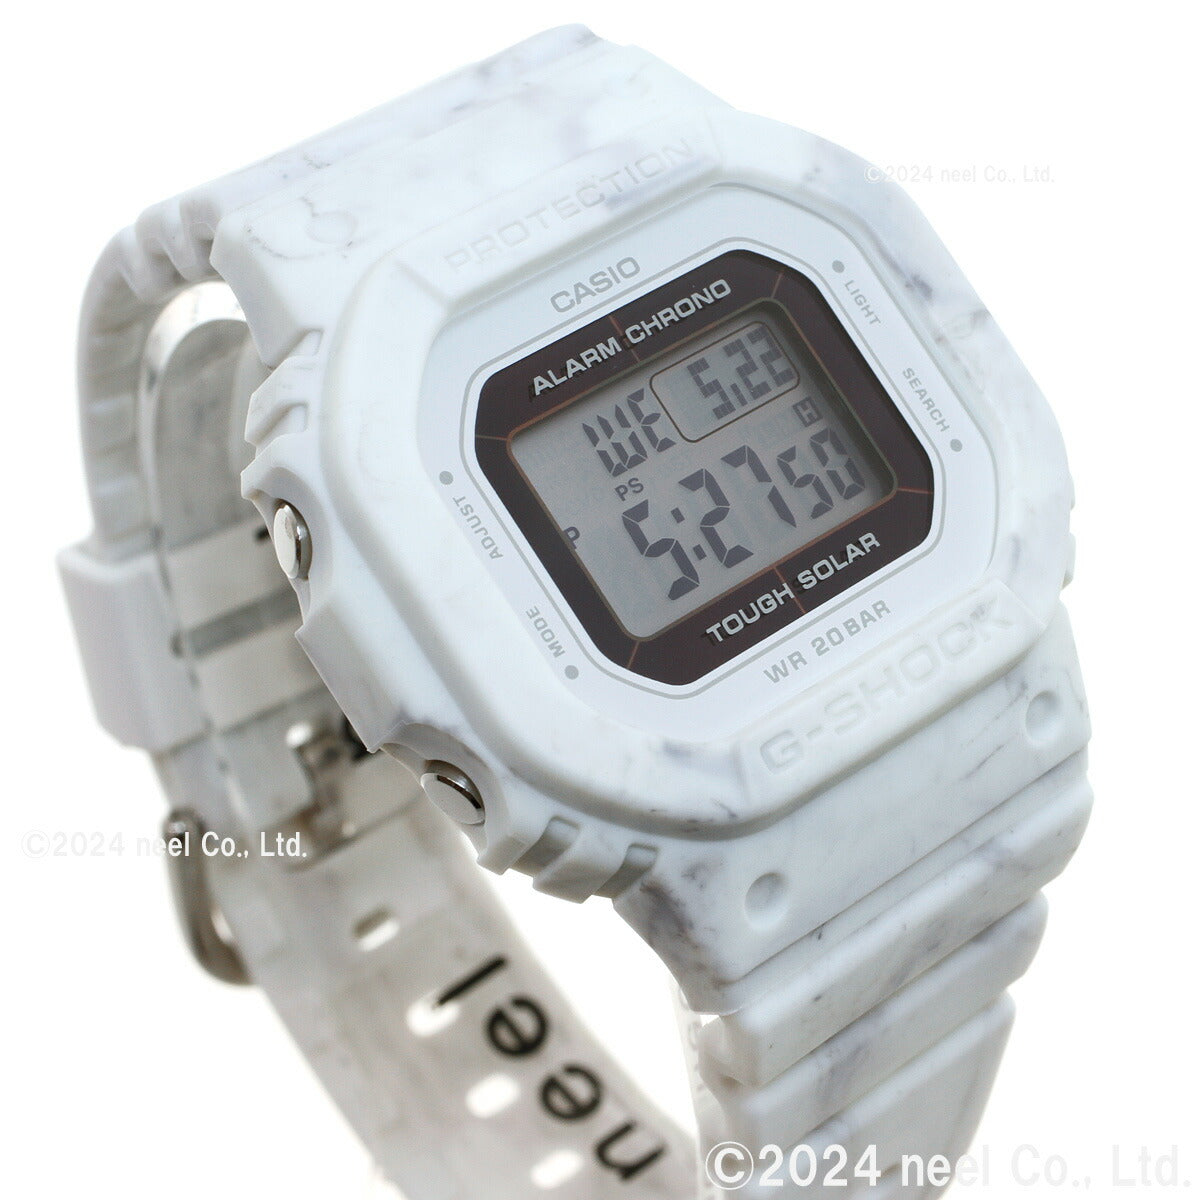 G-SHOCK カシオ Gショック オンライン限定モデル 腕時計 メンズ レディース GMS-S5600RT-7JF DW-5600 小型化・薄型化モデル マーブル模様【2024 新作】